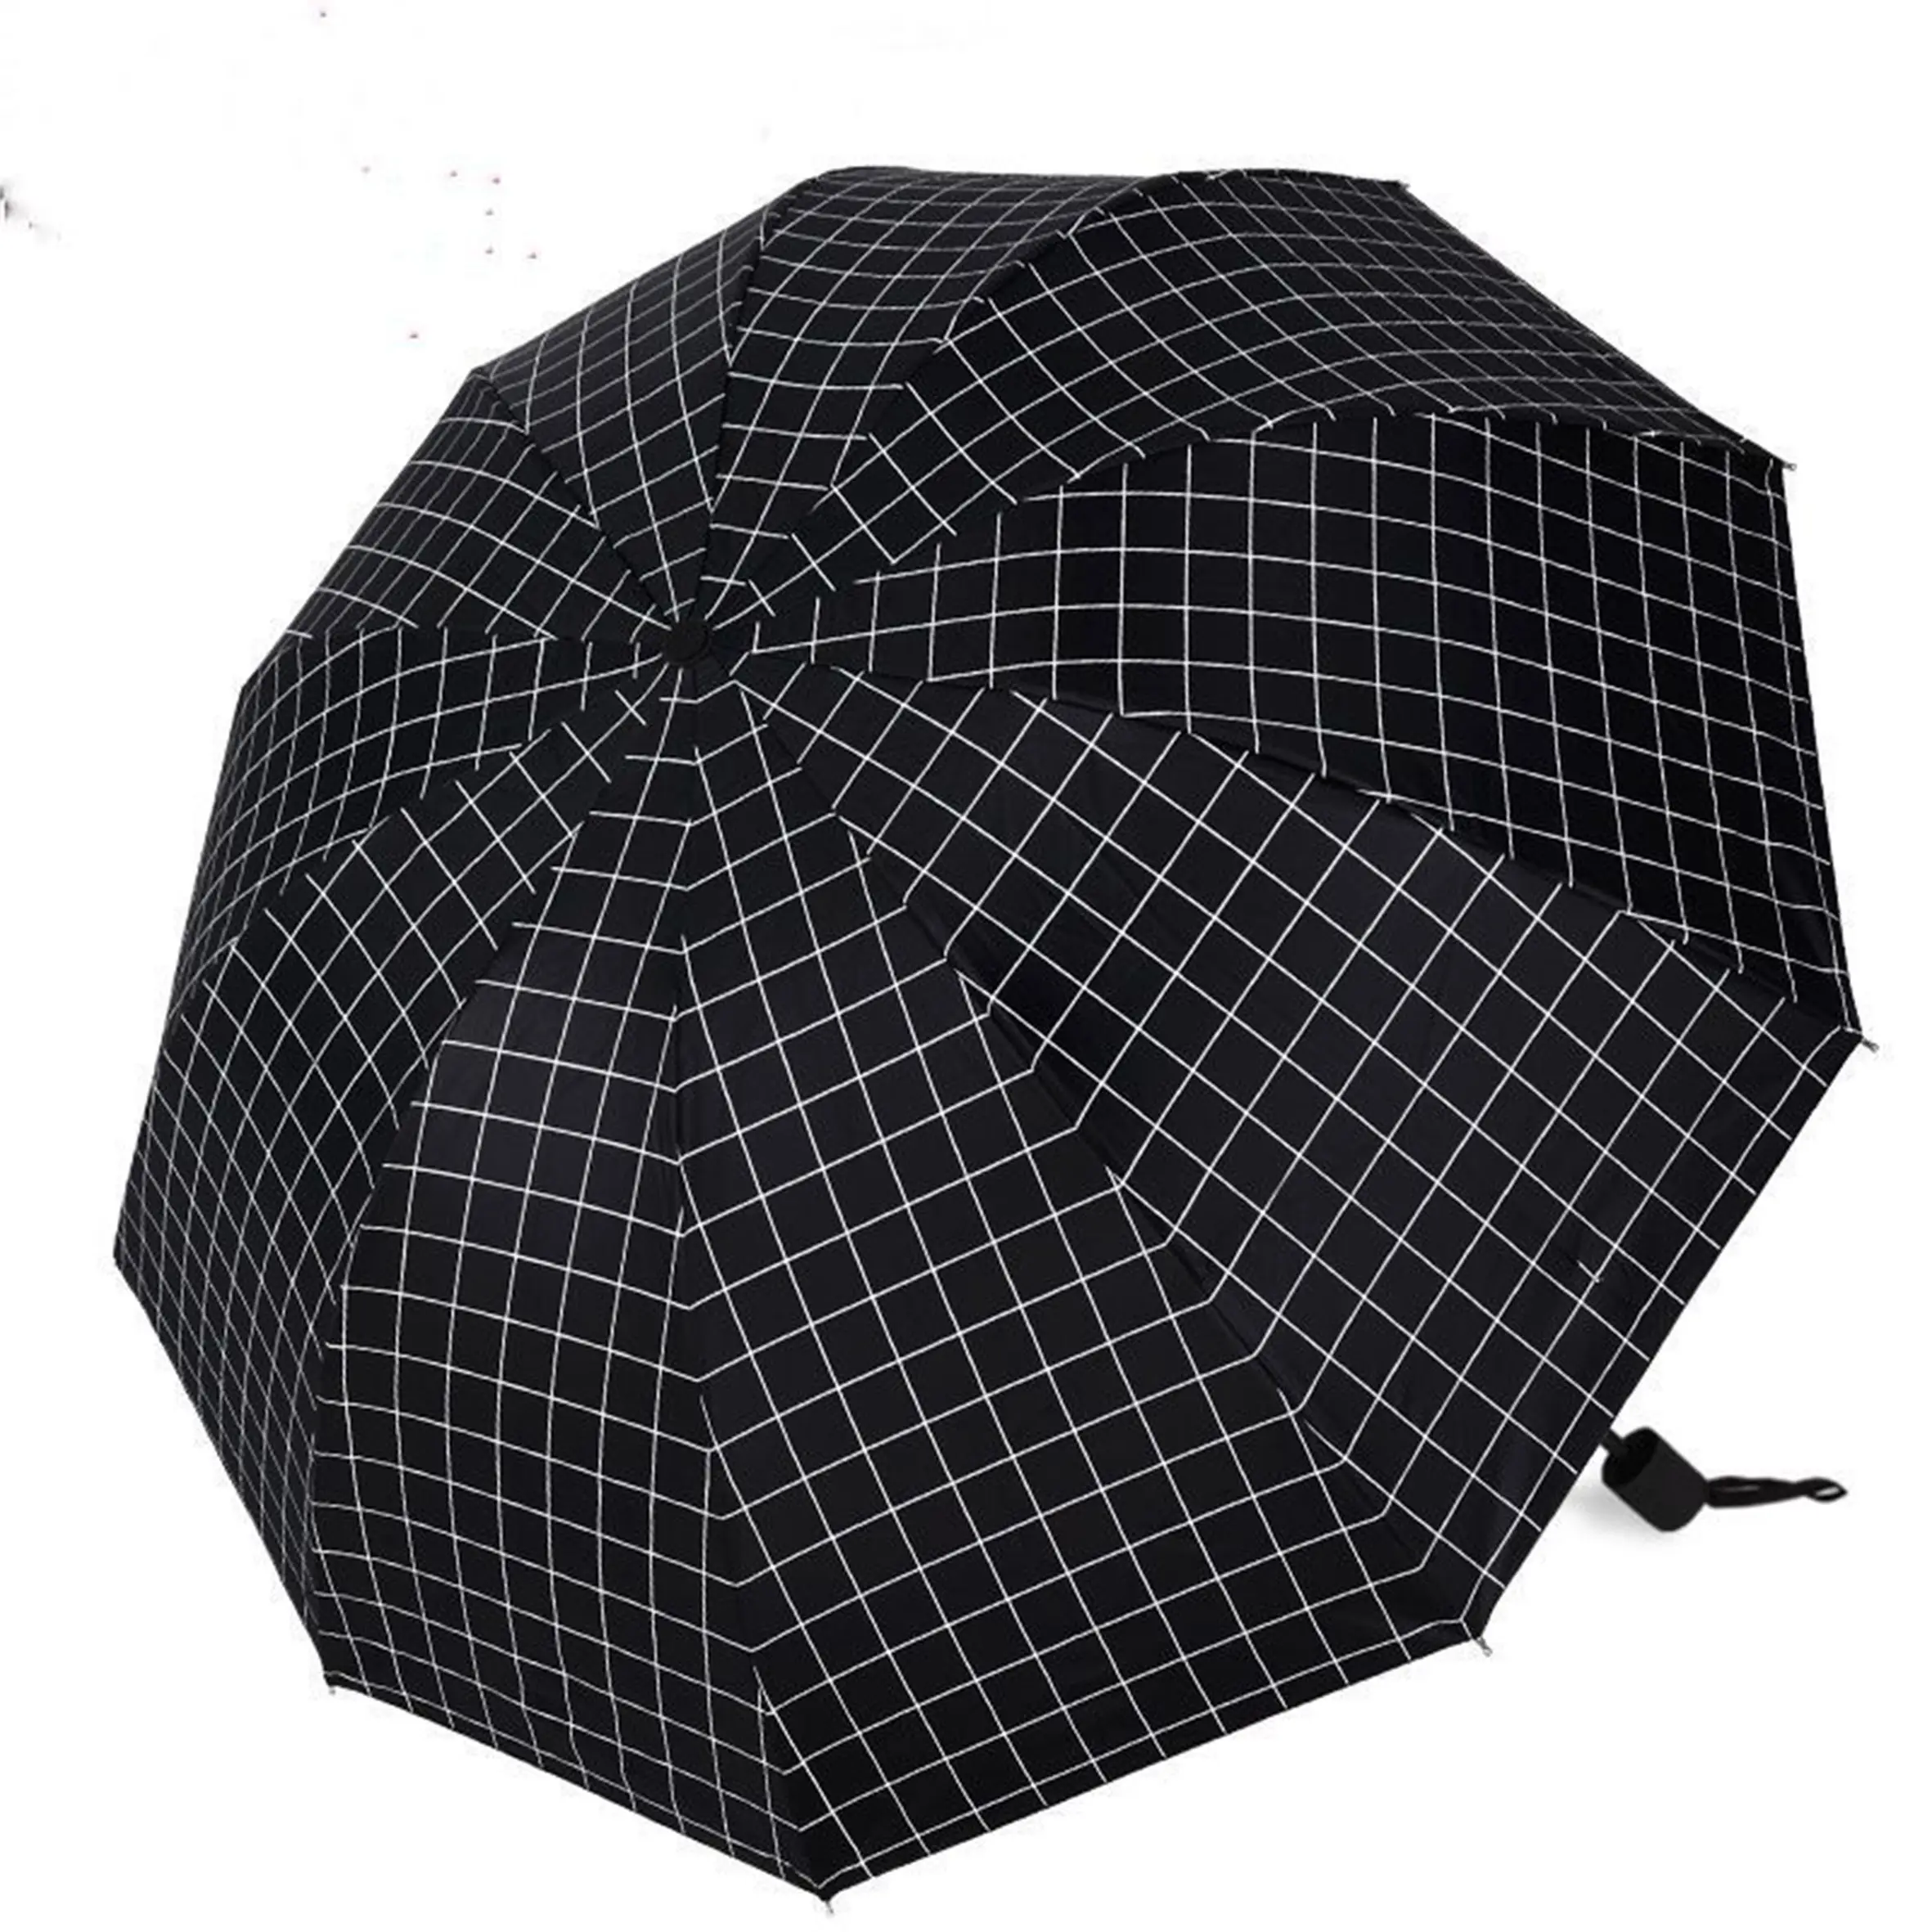 Vente Cadeau Mini 3 Fois Promotion, Parapluie Parasol Léger Portable Revêtement Argent Publicité Personnalisée Parapluie Pas Cher/